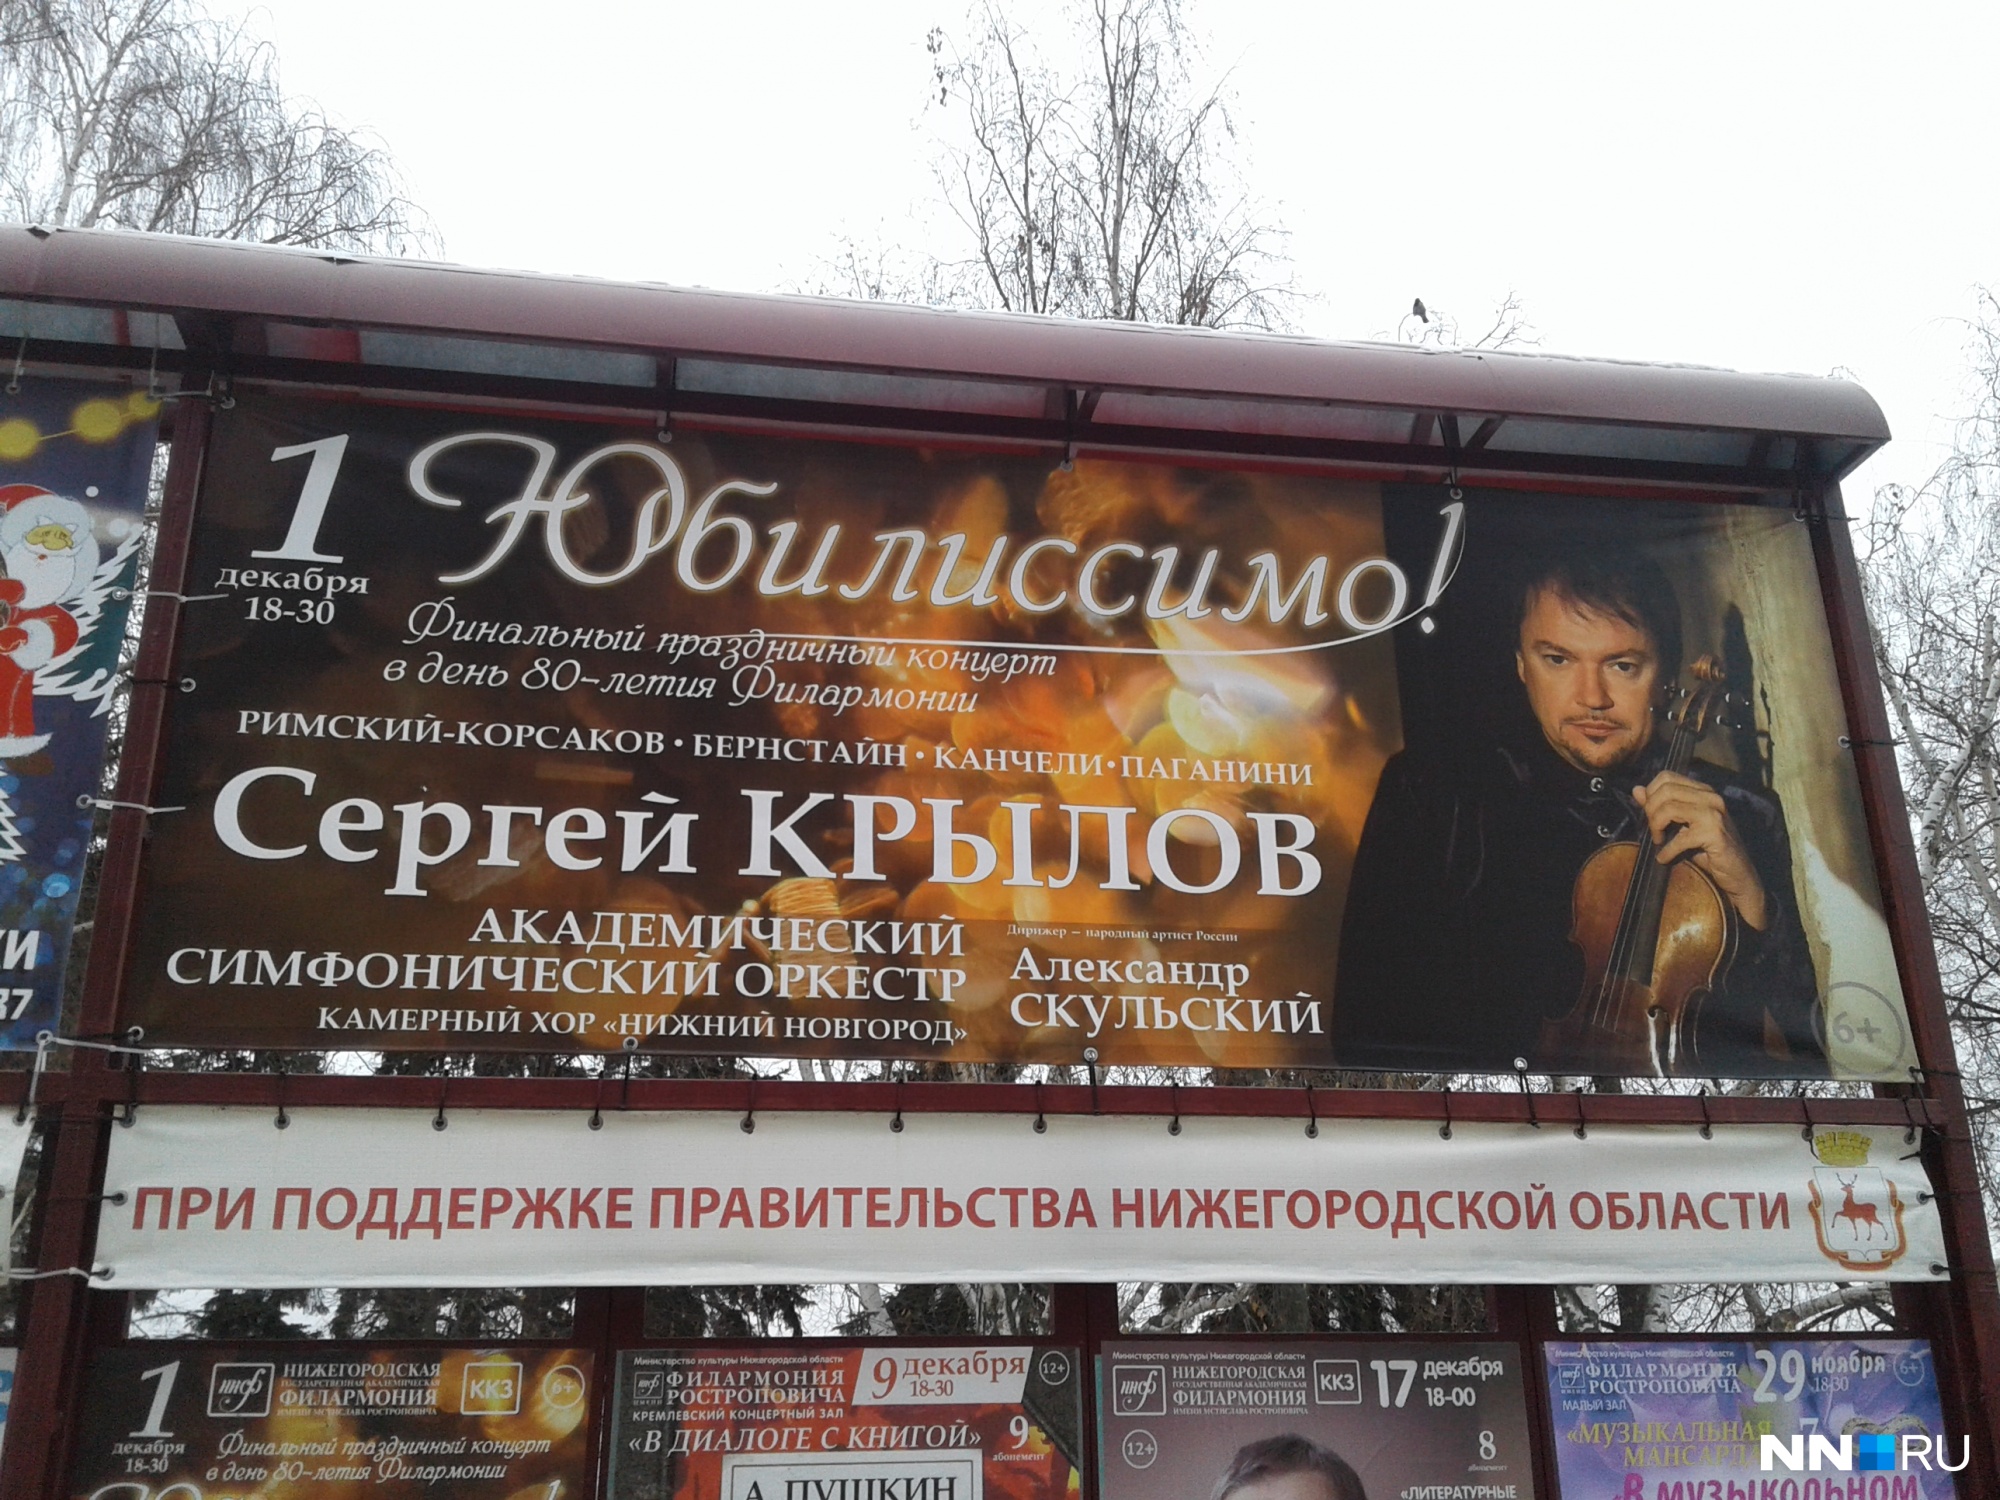 Всемирно известный скрипач приехал на юбилей нижегородской филармонии